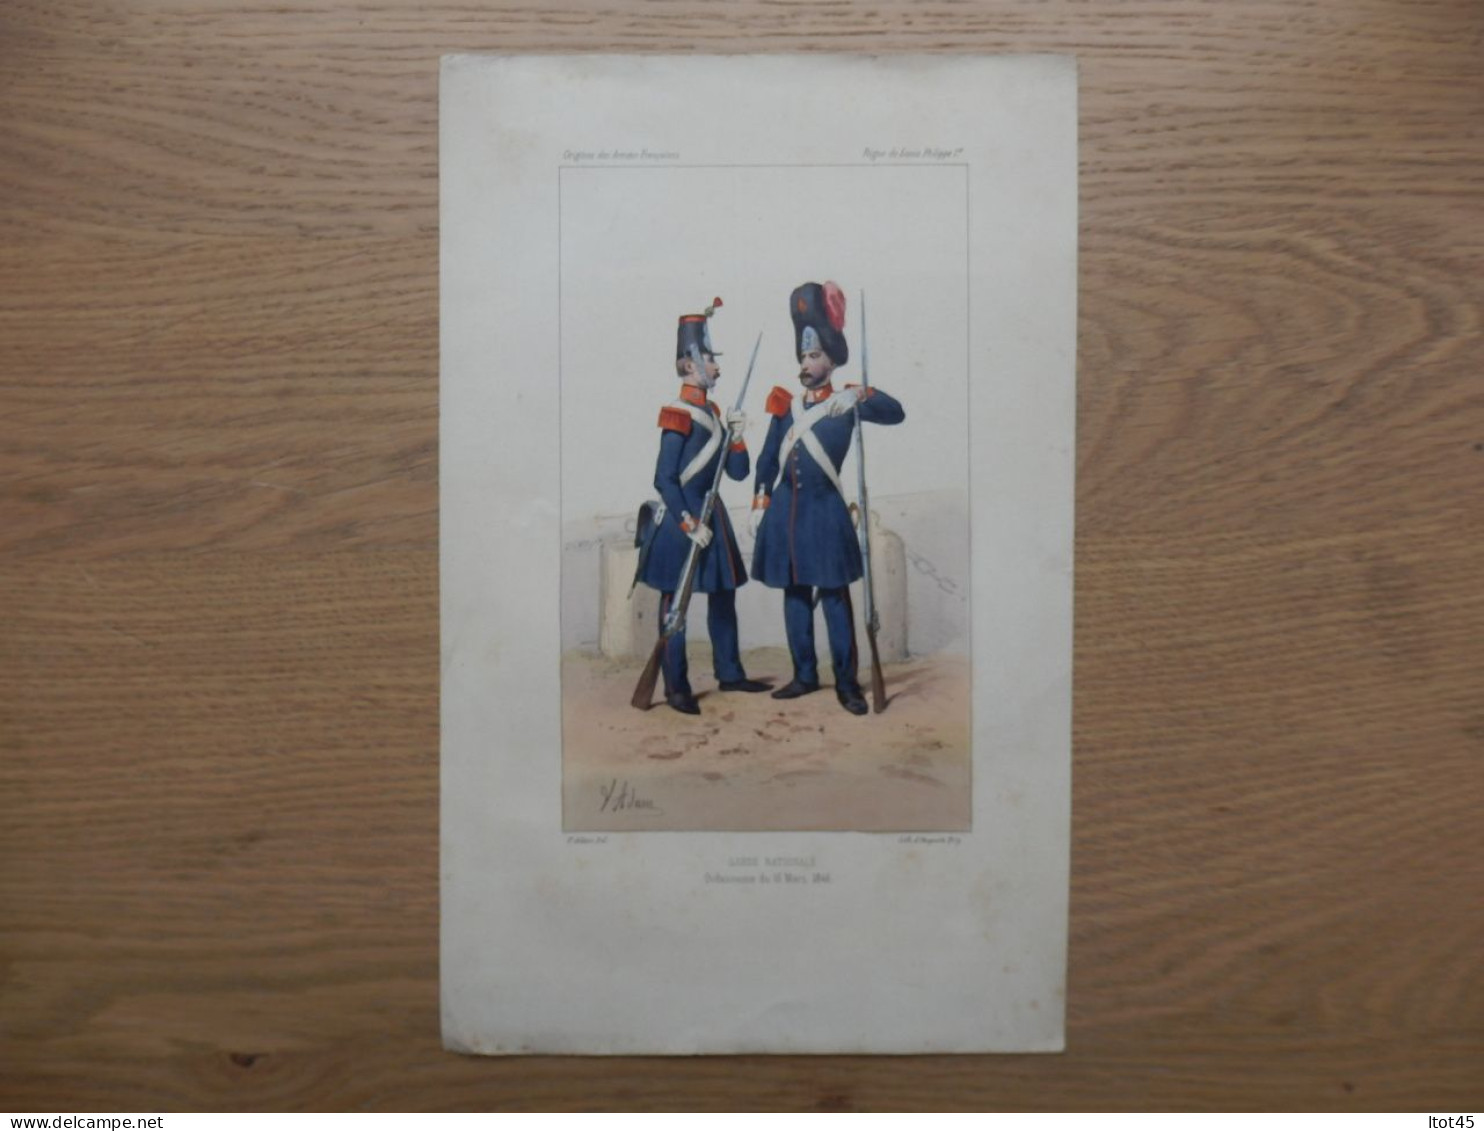 LITHOGRAPHIE REPRODUCTION GARDE NATIONALE ORDONNACE DU 16MARS 1846 - Uniformes